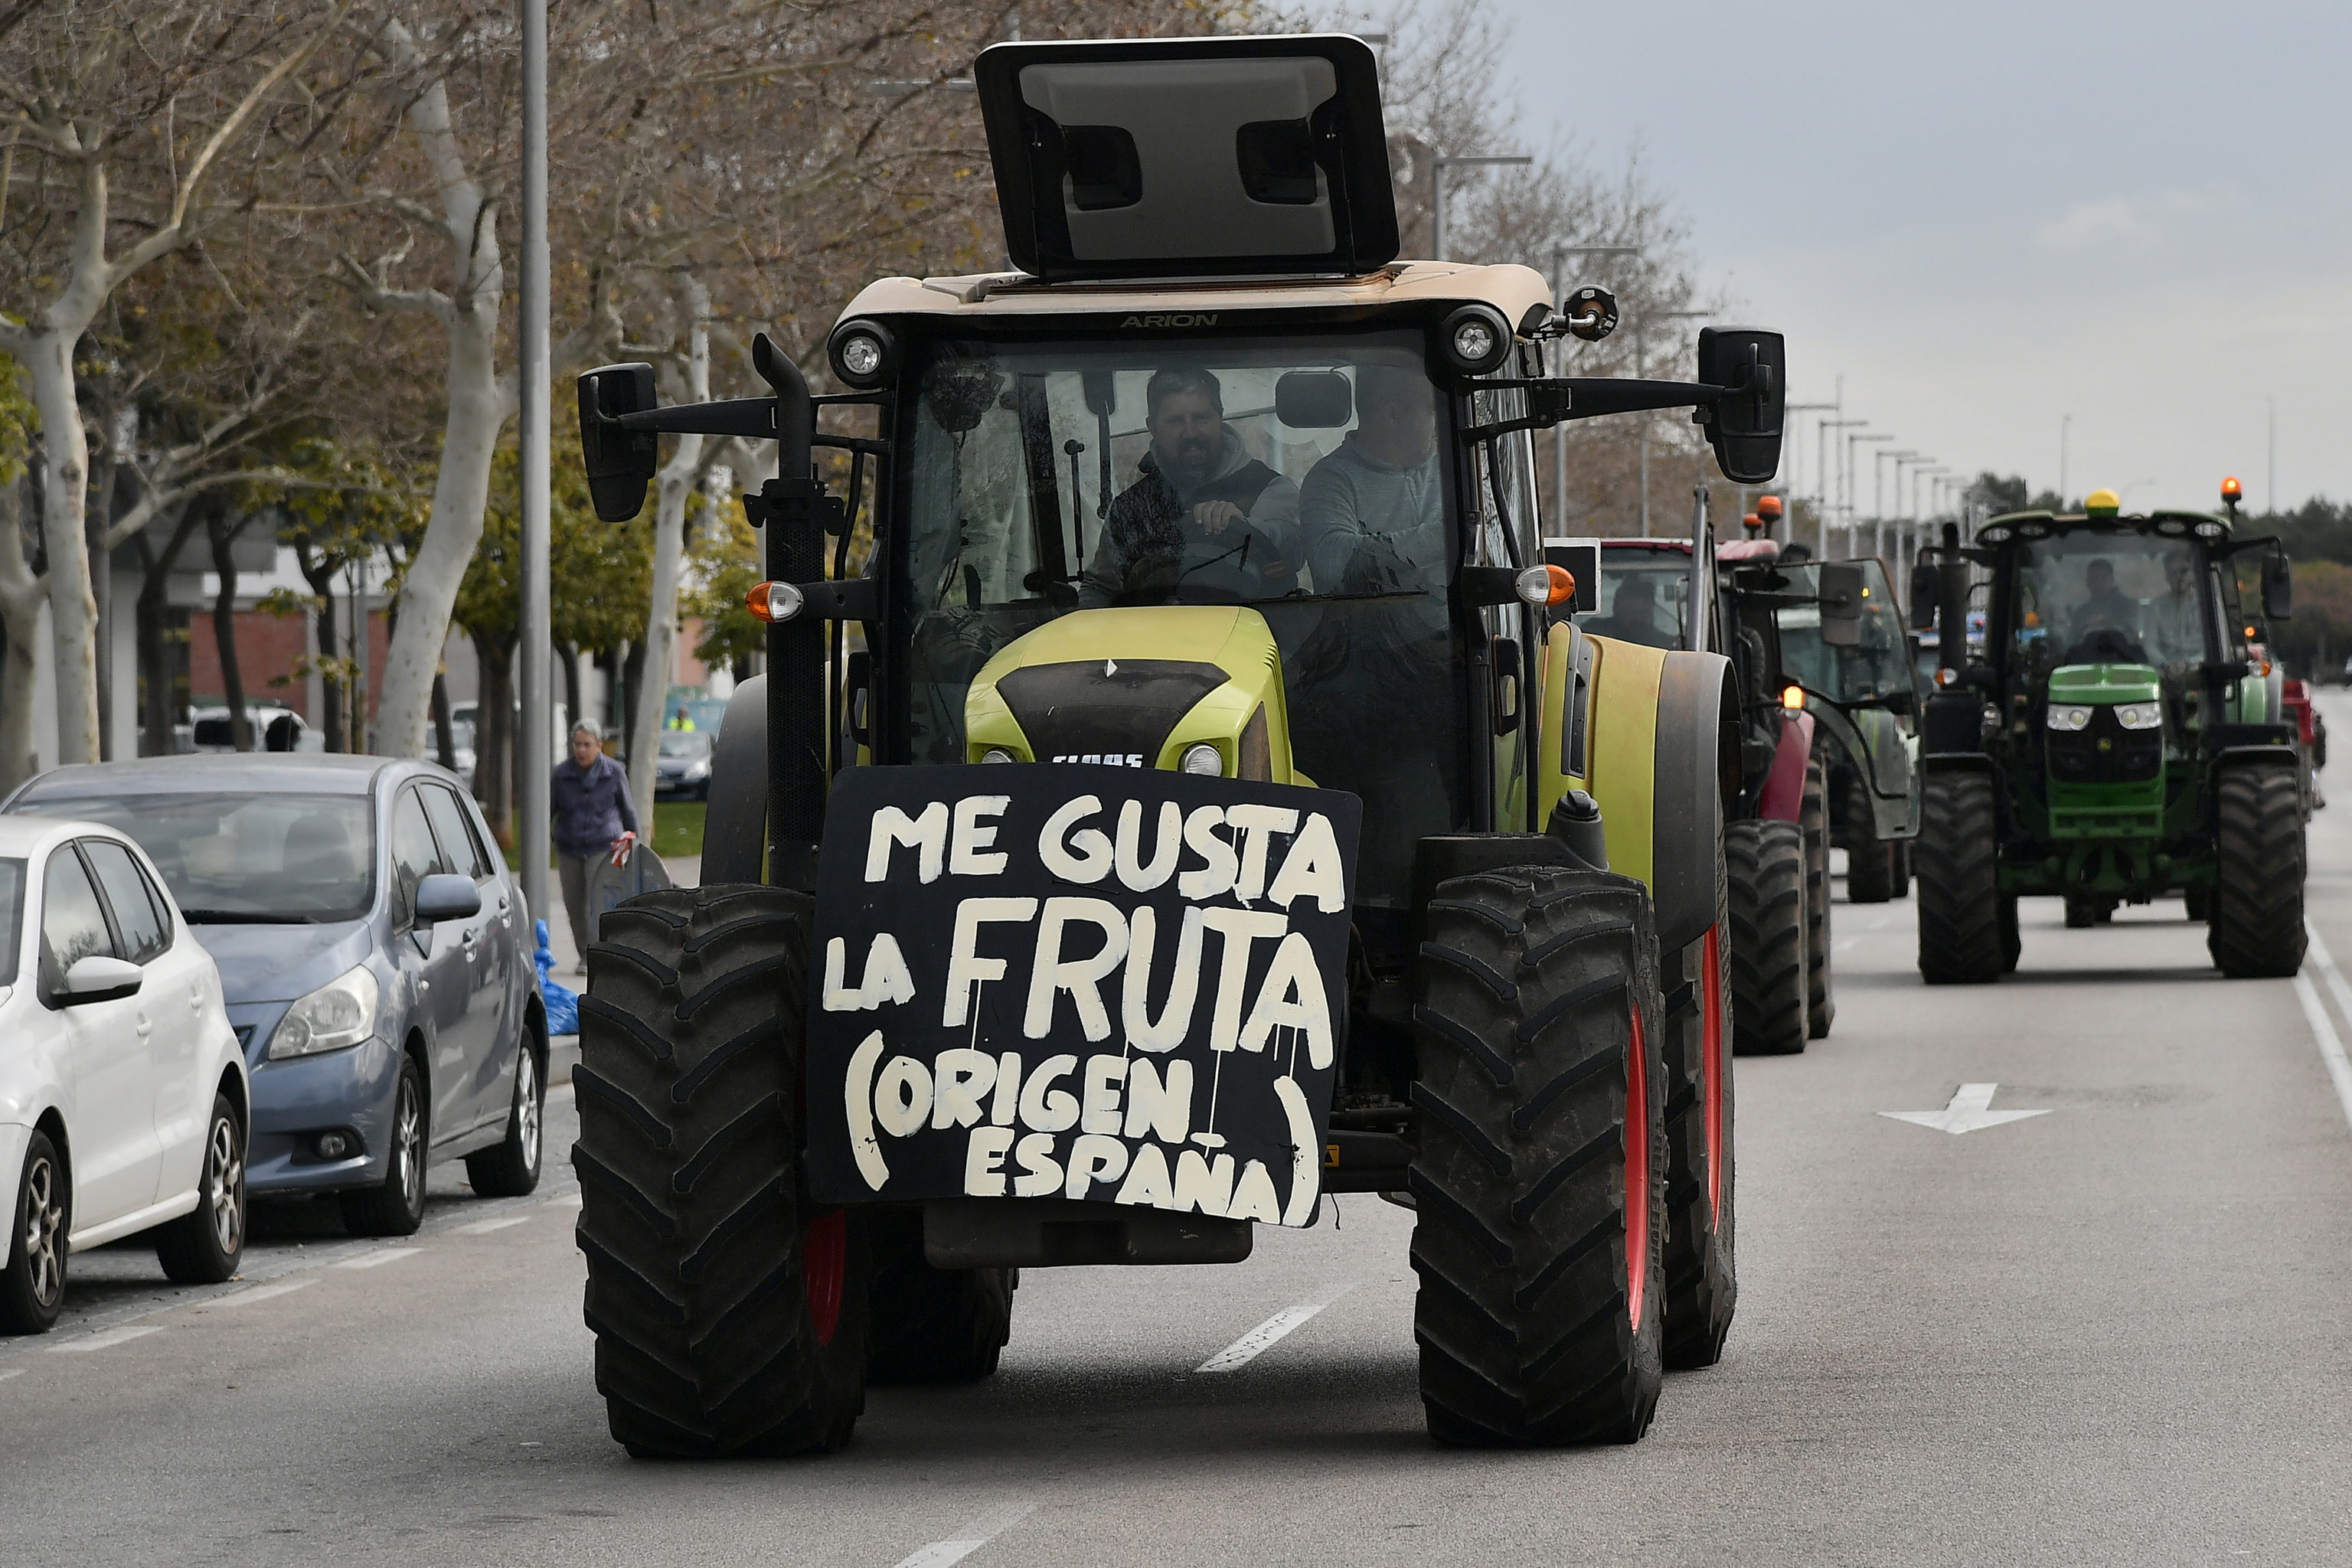 Los tractores llegan a Madrid: La crisis de los agricultores amenaza con disparar aún más los precios de los alimentos en el supermercado